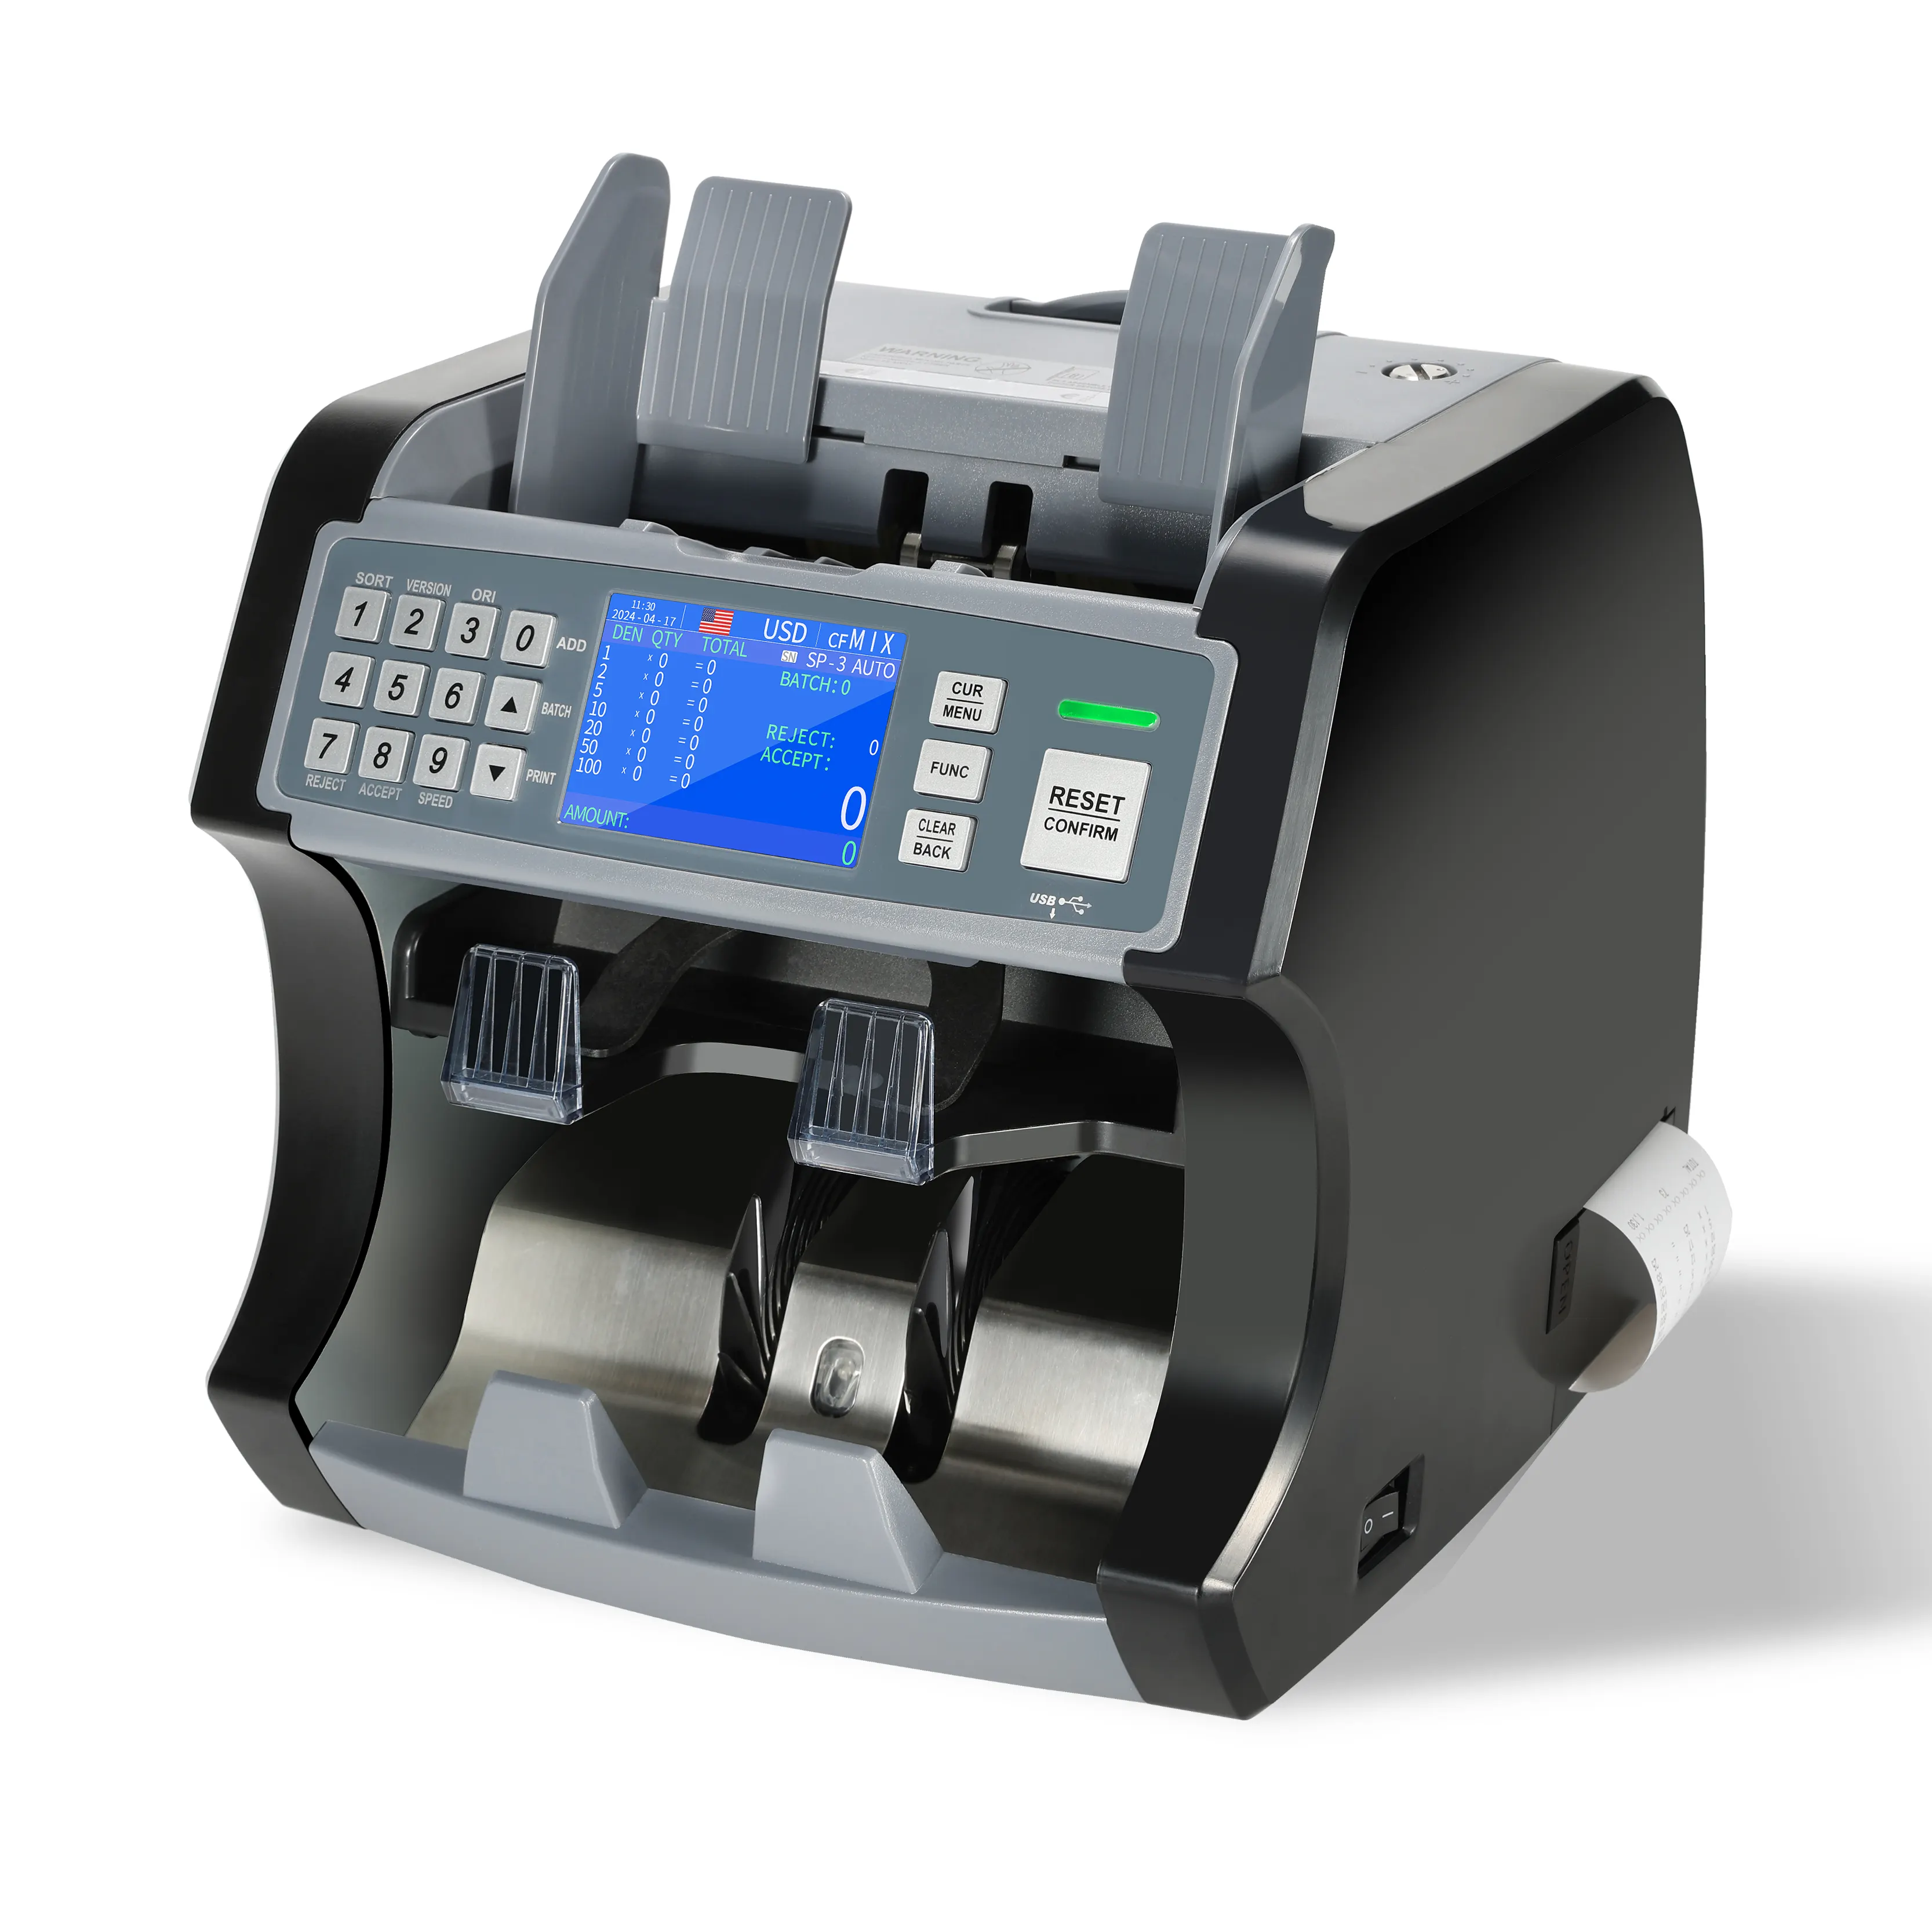 S210 henry avec imprimante intégrée Euro Bill Counter Mix bill valeur de la facture comptant comptant le fabricant de la machine à compter les devises